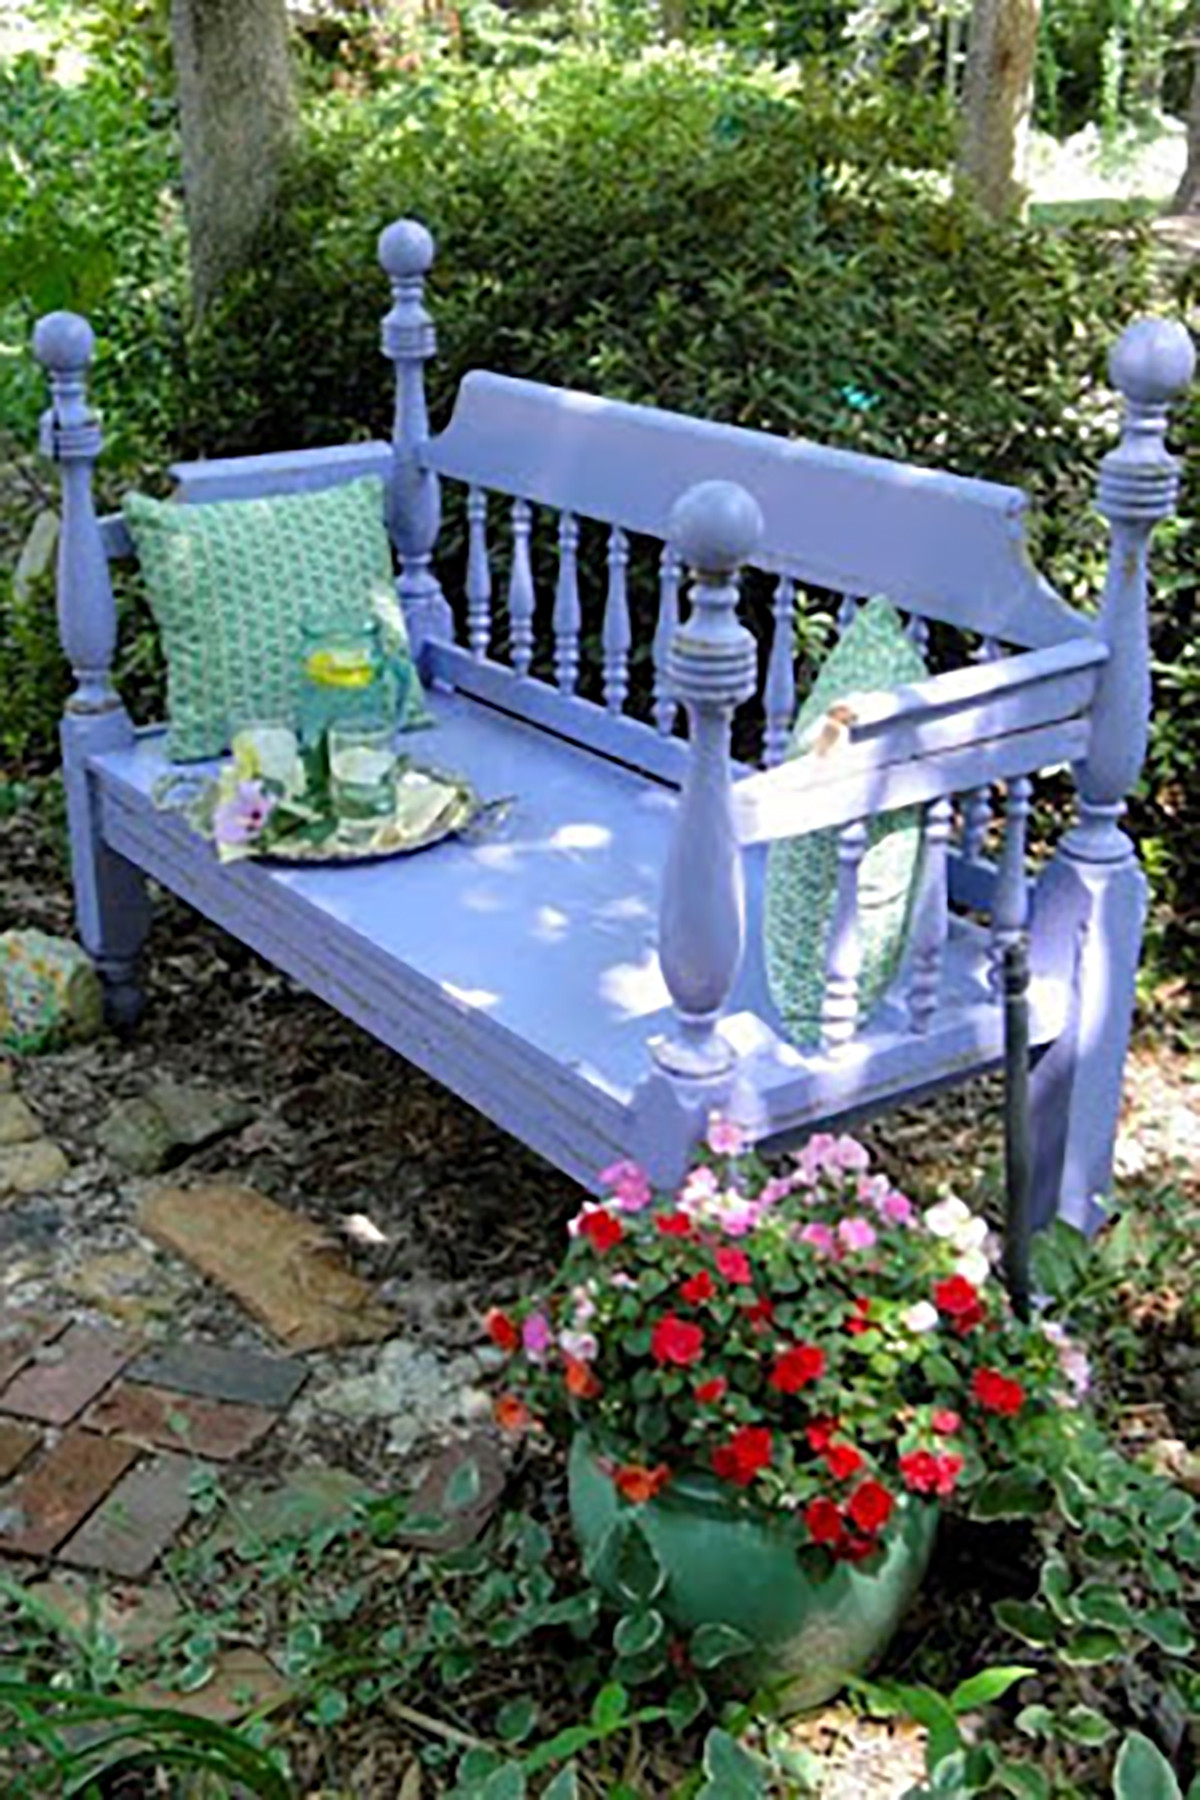 DIY Garden Bench Plans
 12 DIY Garden Bench Ideas Free Plans for Outdoor Benches